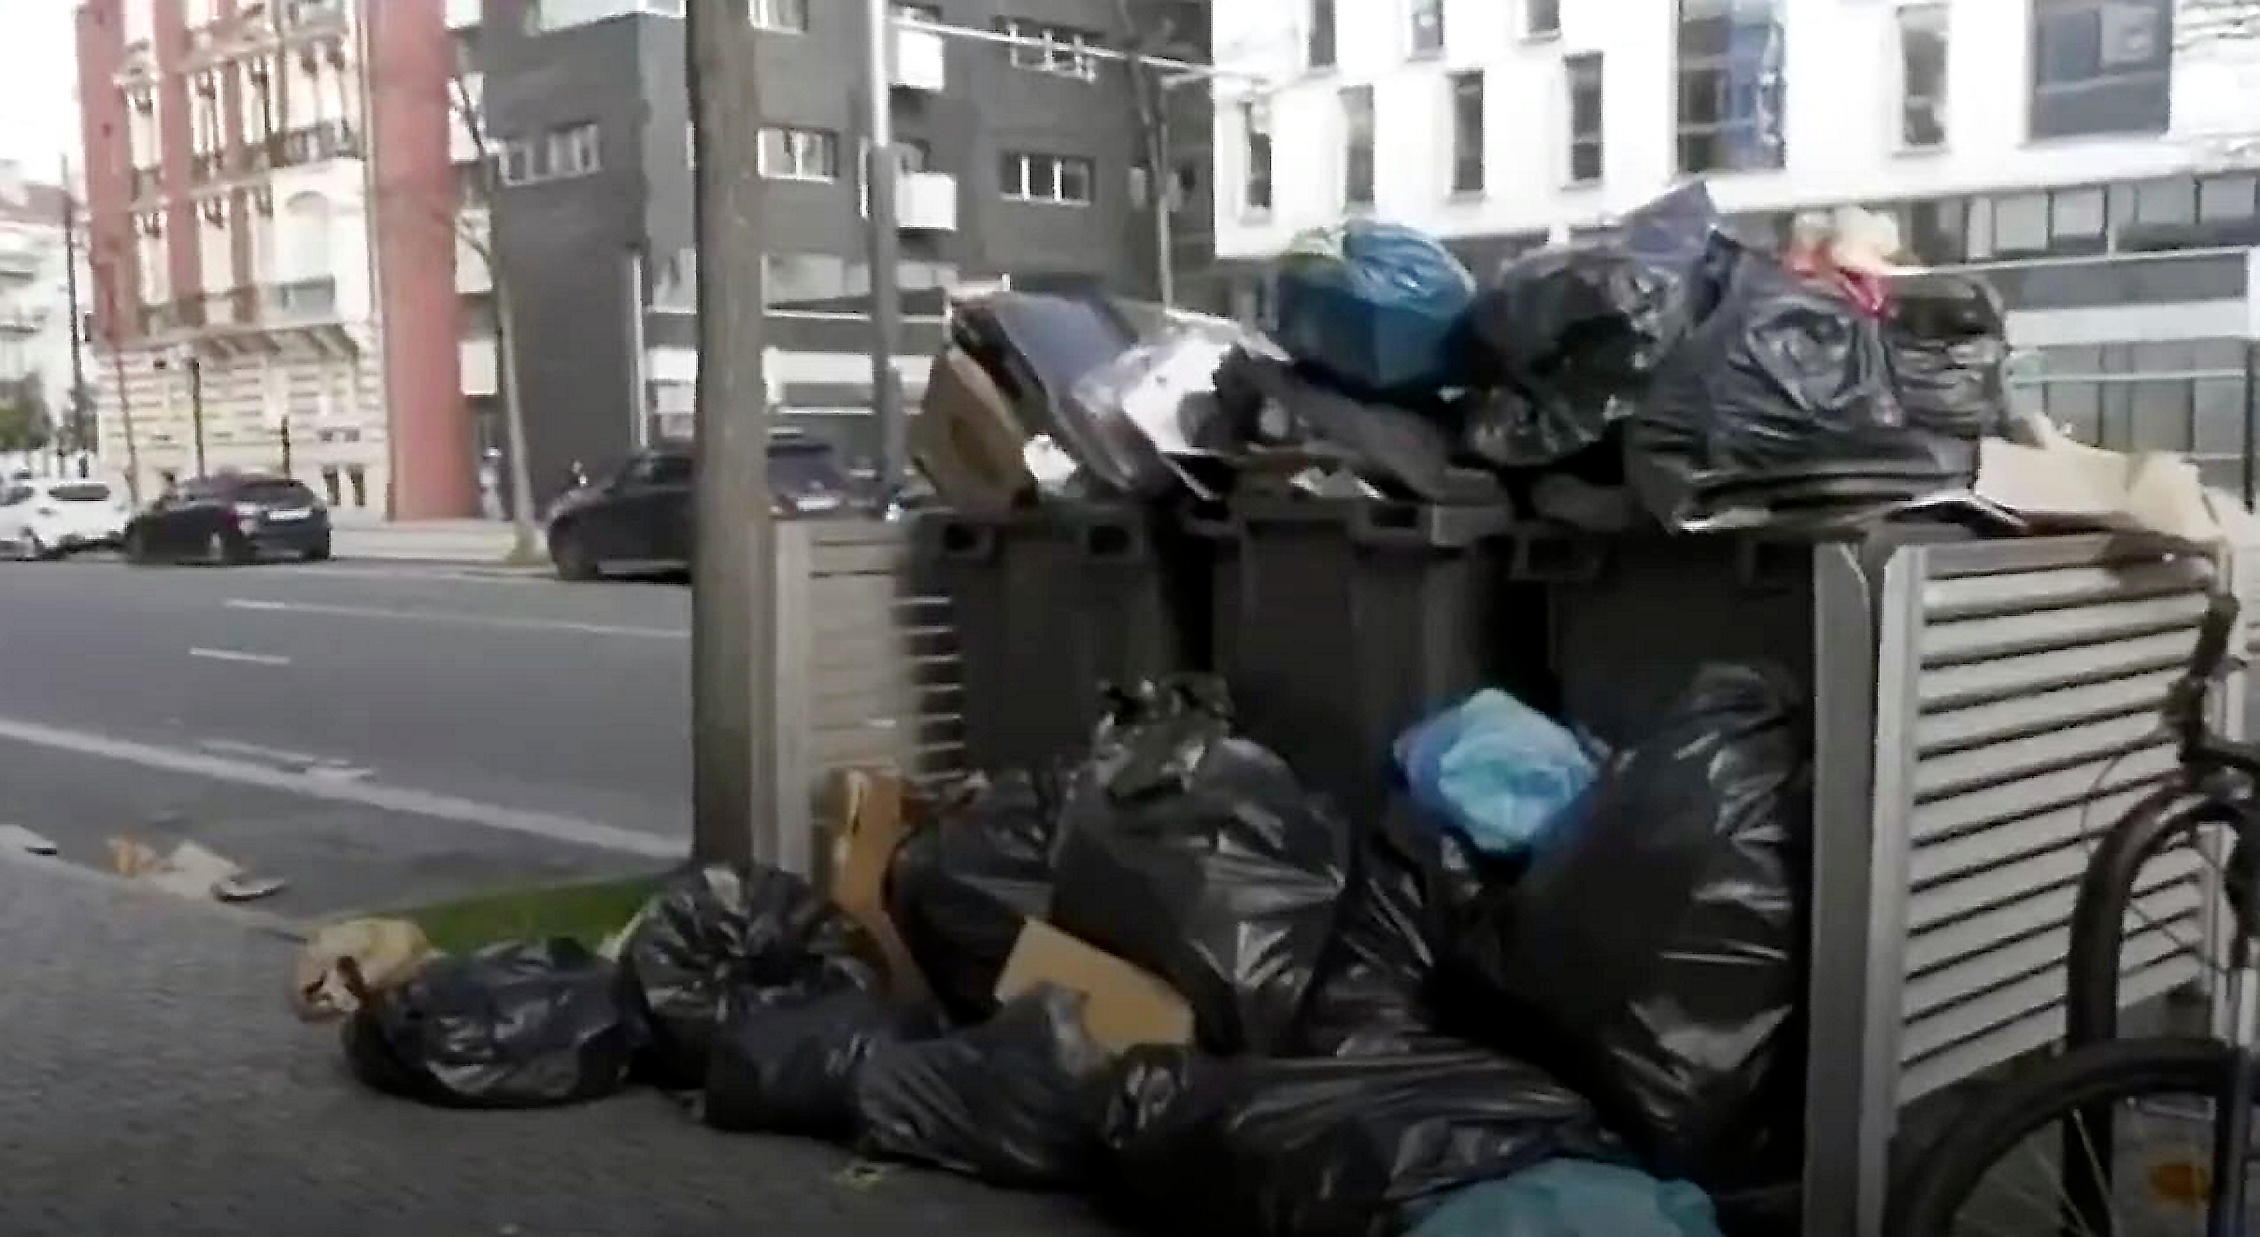 L'accumulation des déchets sur les trottoirs de la cité océane a conduit les autorités à demander aux usagers de ne pas sortir leurs poubelles, dans la mesure du possible. Document BFM TV